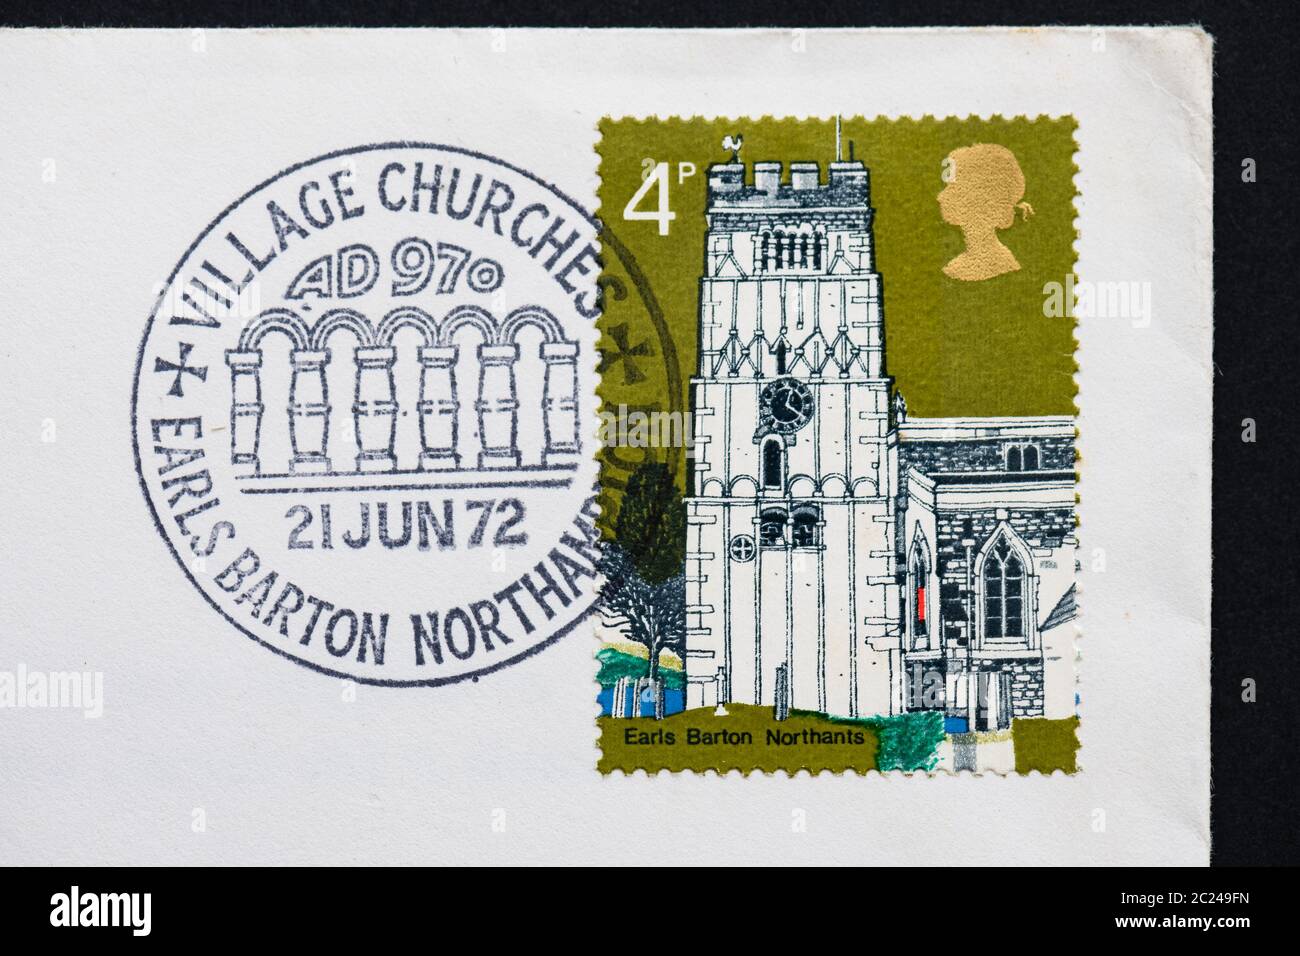 All Saints Church Earls Barton Briefmarke für den ersten Tag, herausgegeben von der Royal Mail 21 June 1972 und mit dem Poststempel Earls Barton, Northamptonshire, UK Stockfoto